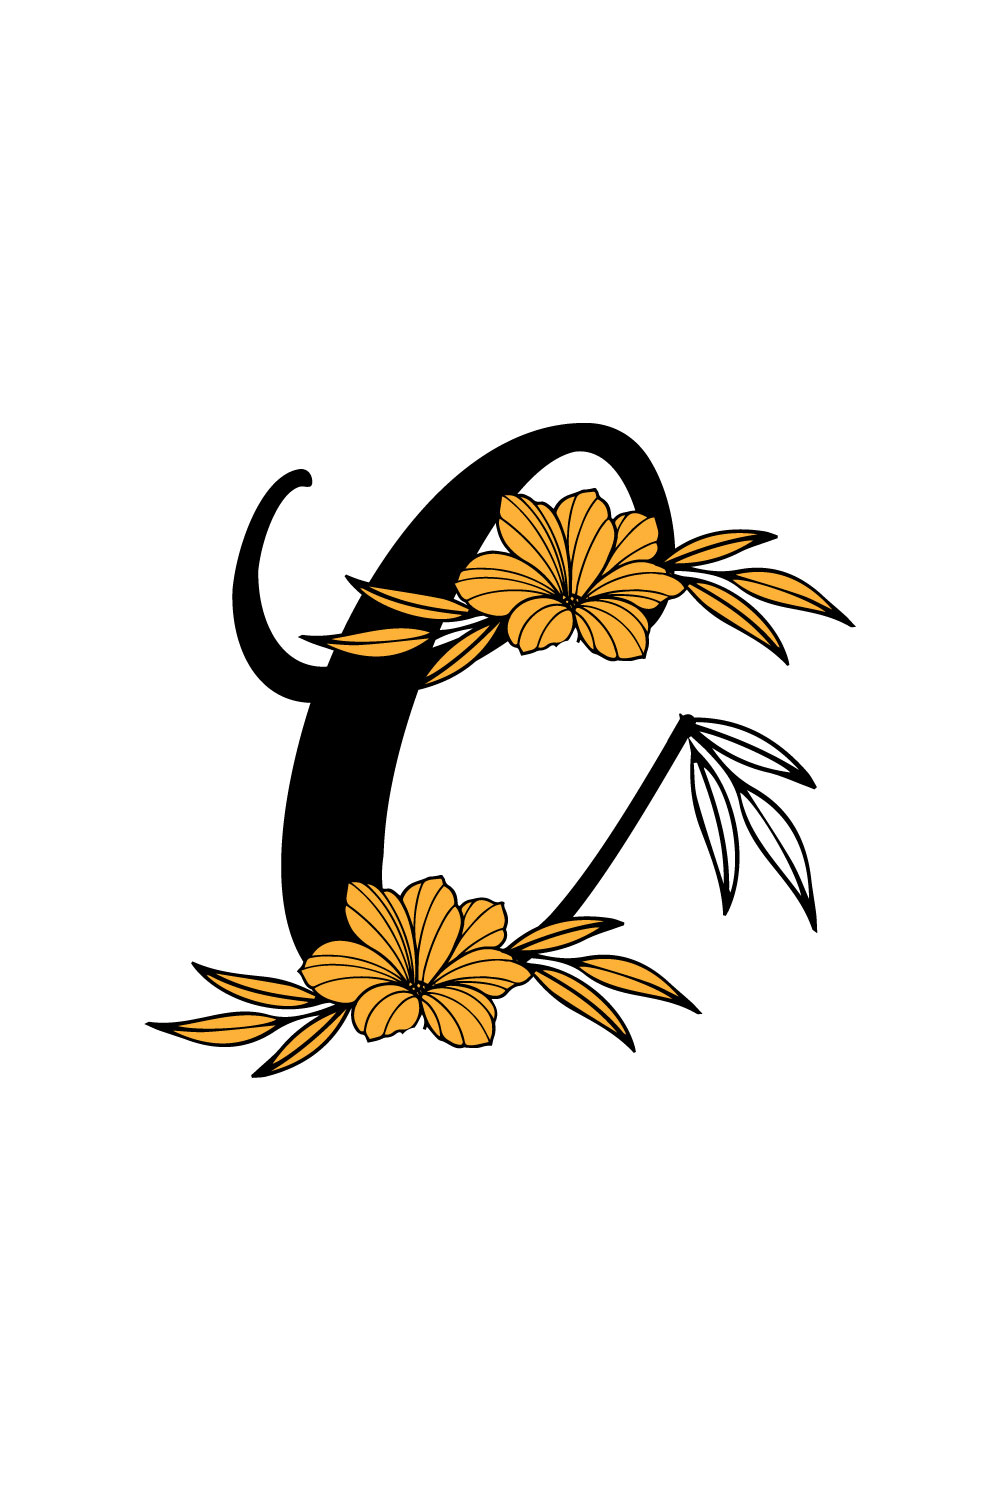 Free C Letter Flower Logo pinterest preview image.